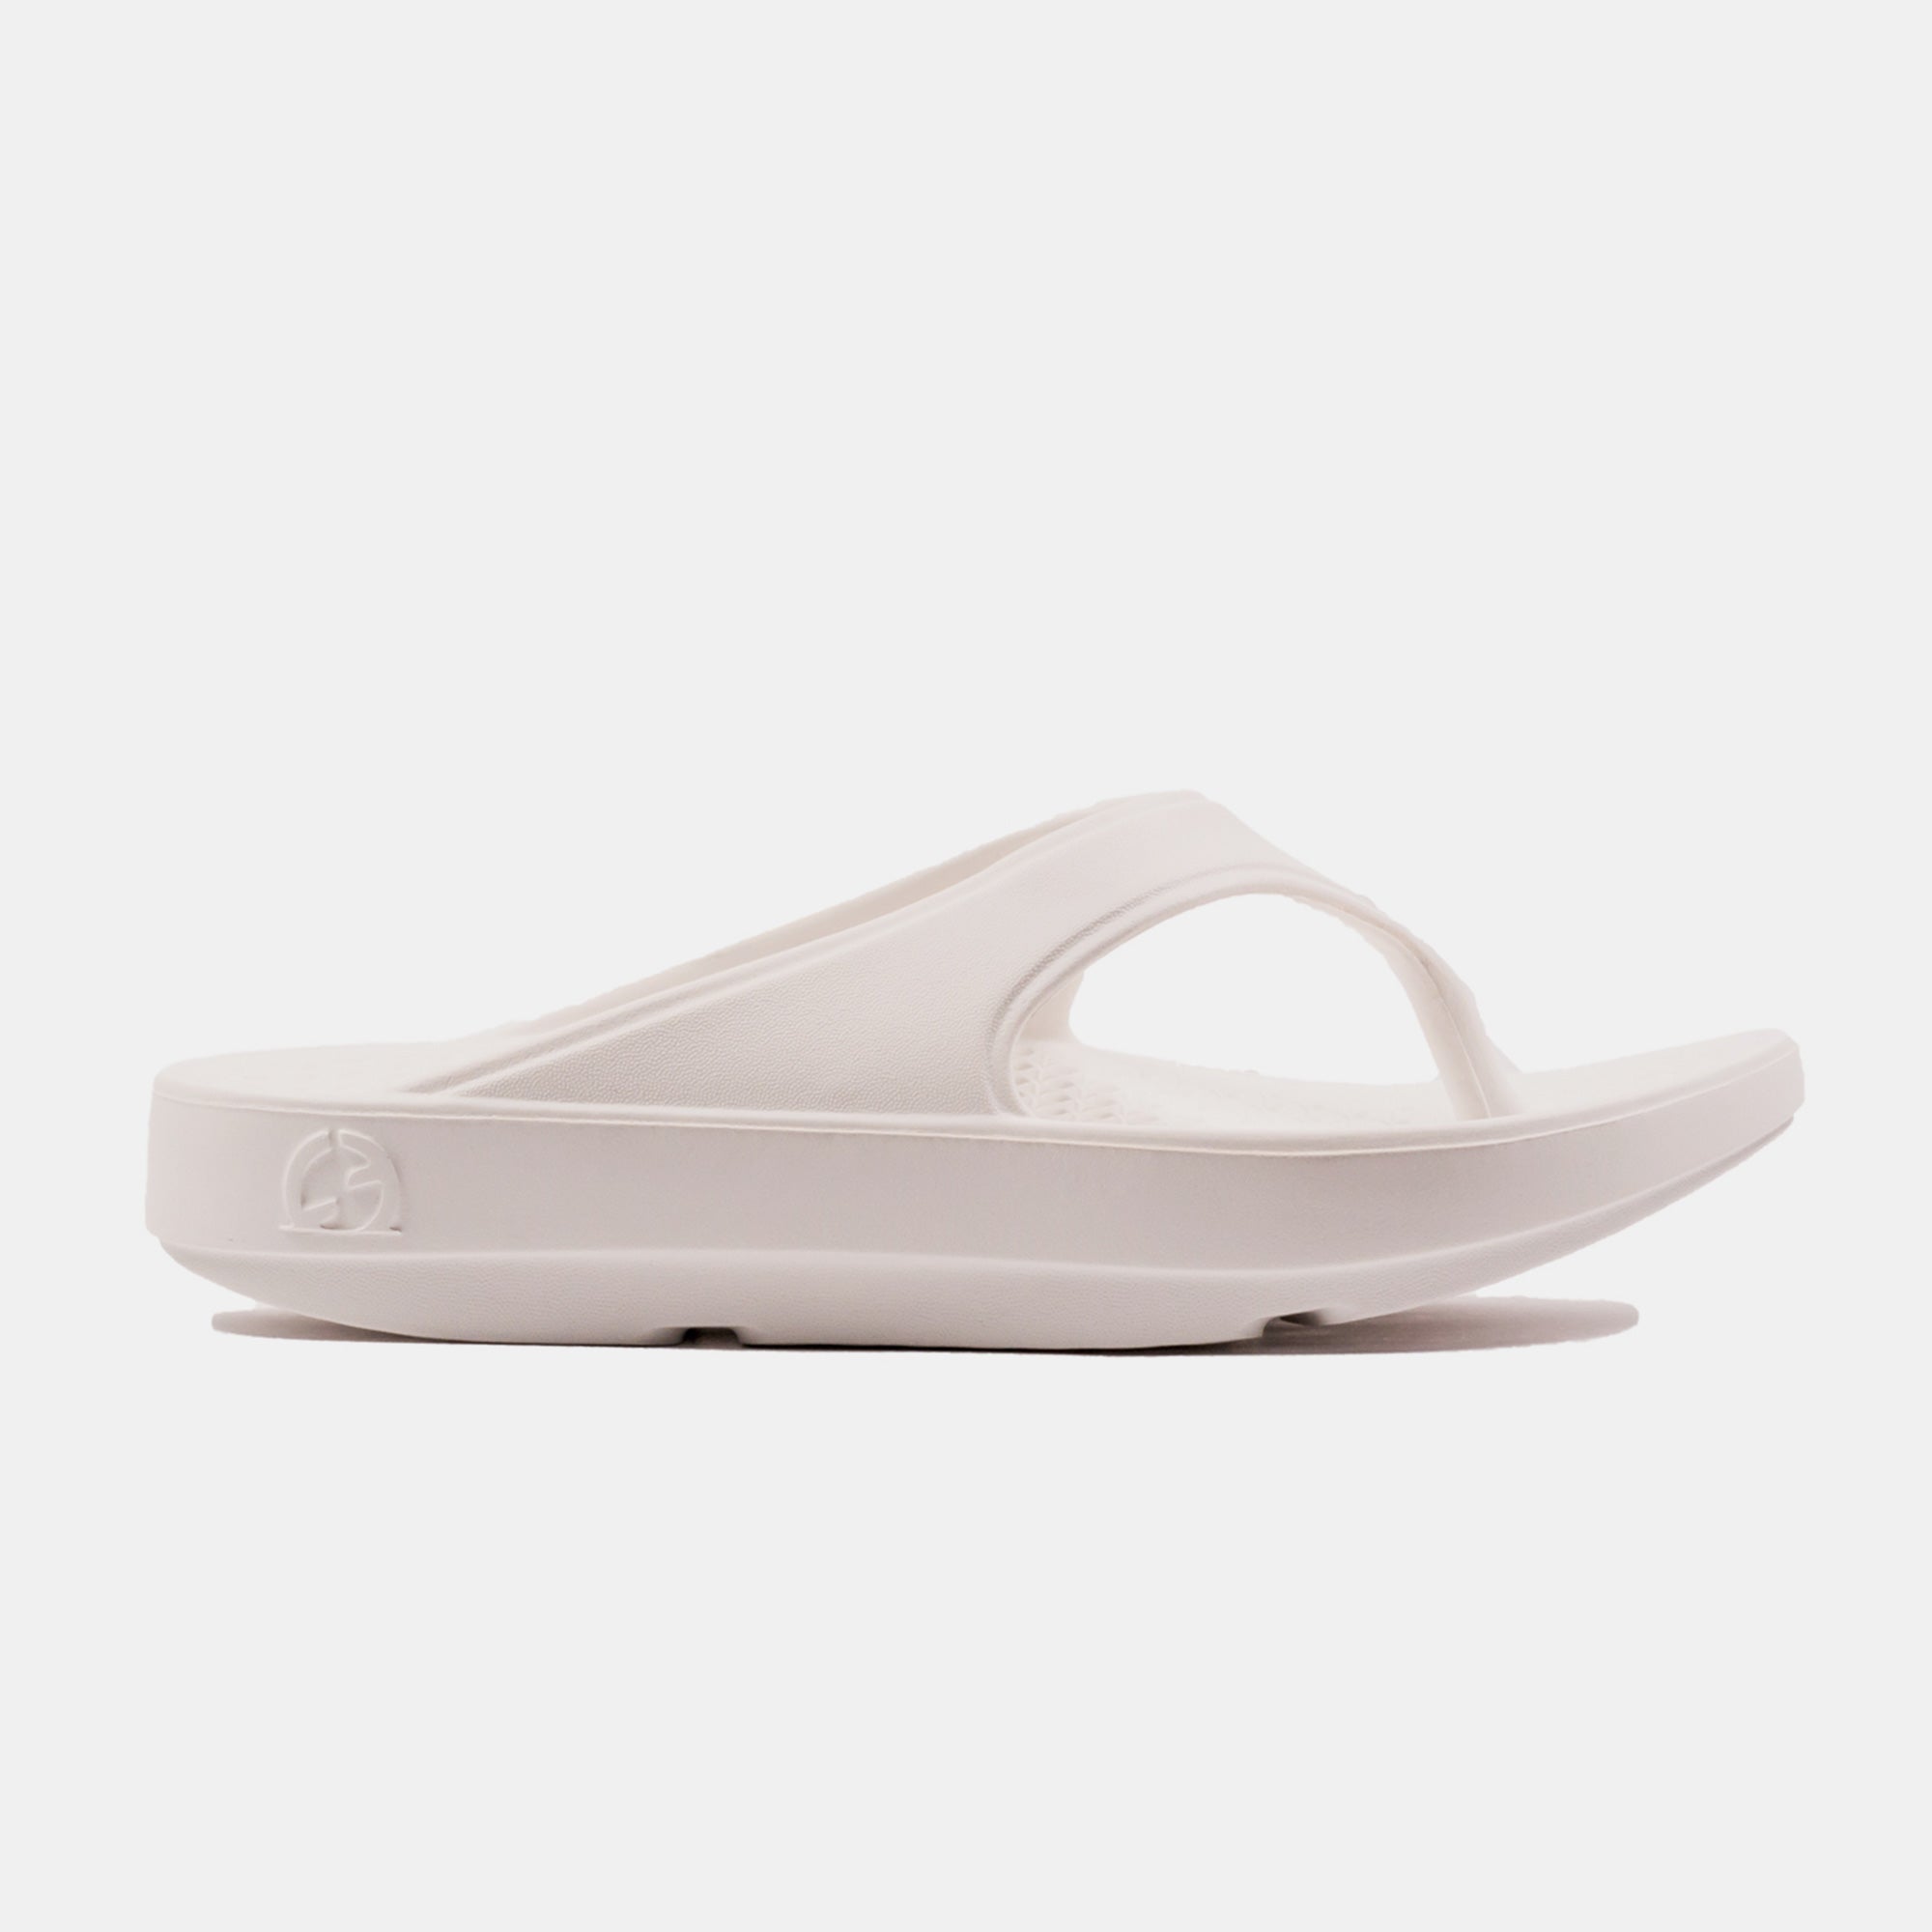 Unisex Flip Flop - White